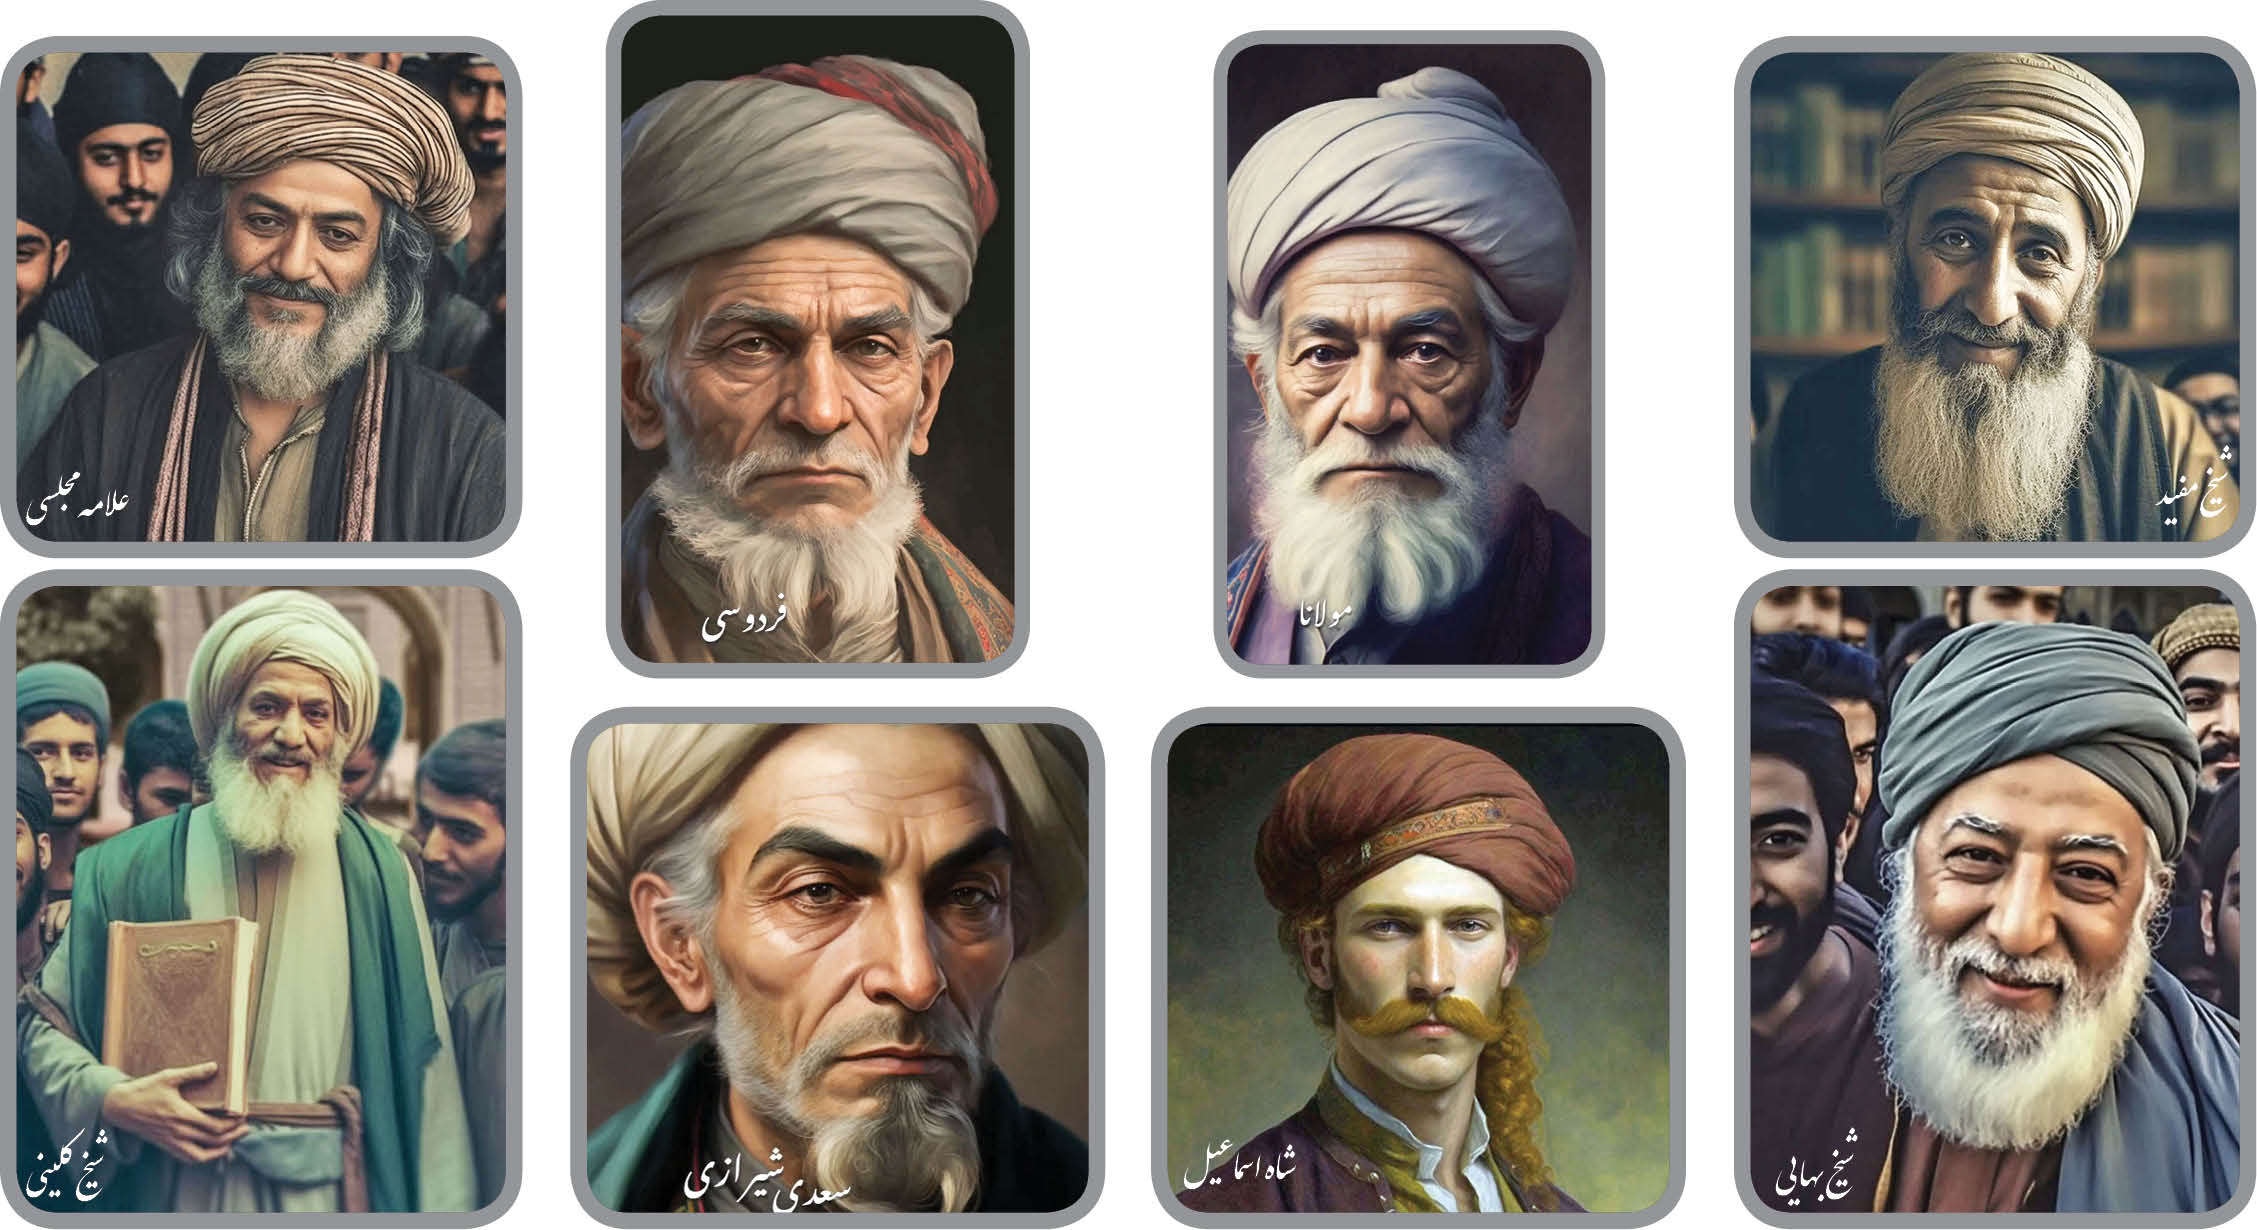 درباره معجزه تازه هوش مصنوعی که چهره برخی از مفاخر ایرانی را تصویر کرده است